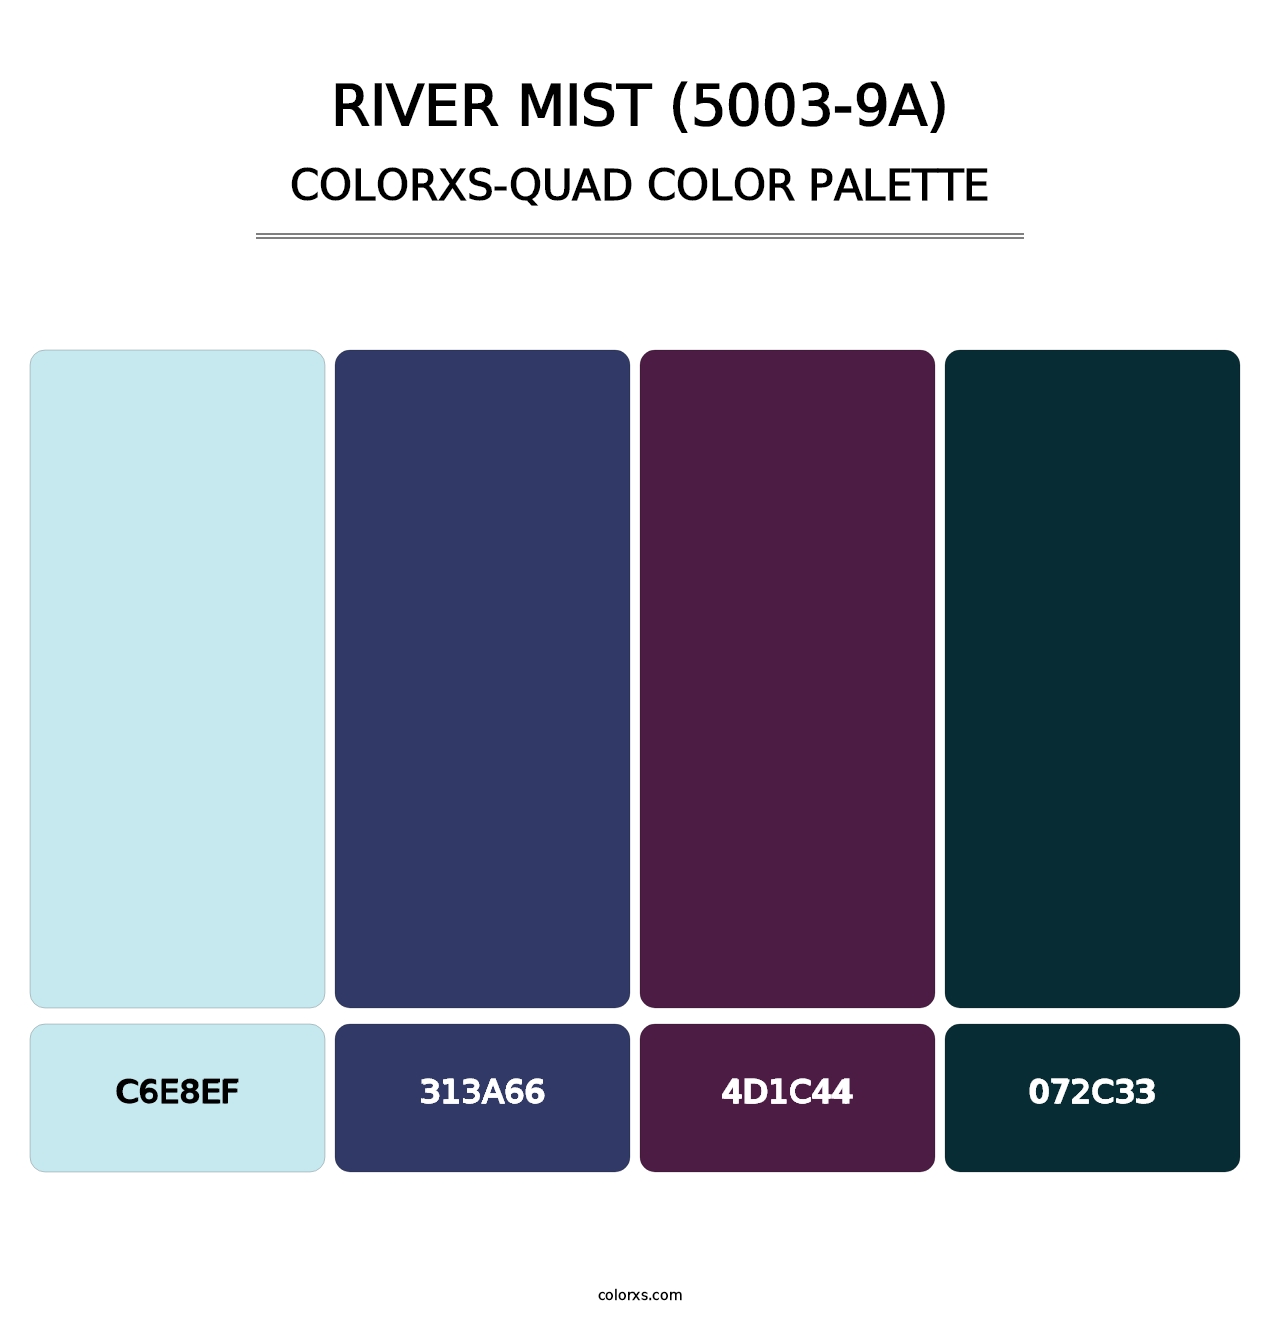 River Mist (5003-9A) - Colorxs Quad Palette